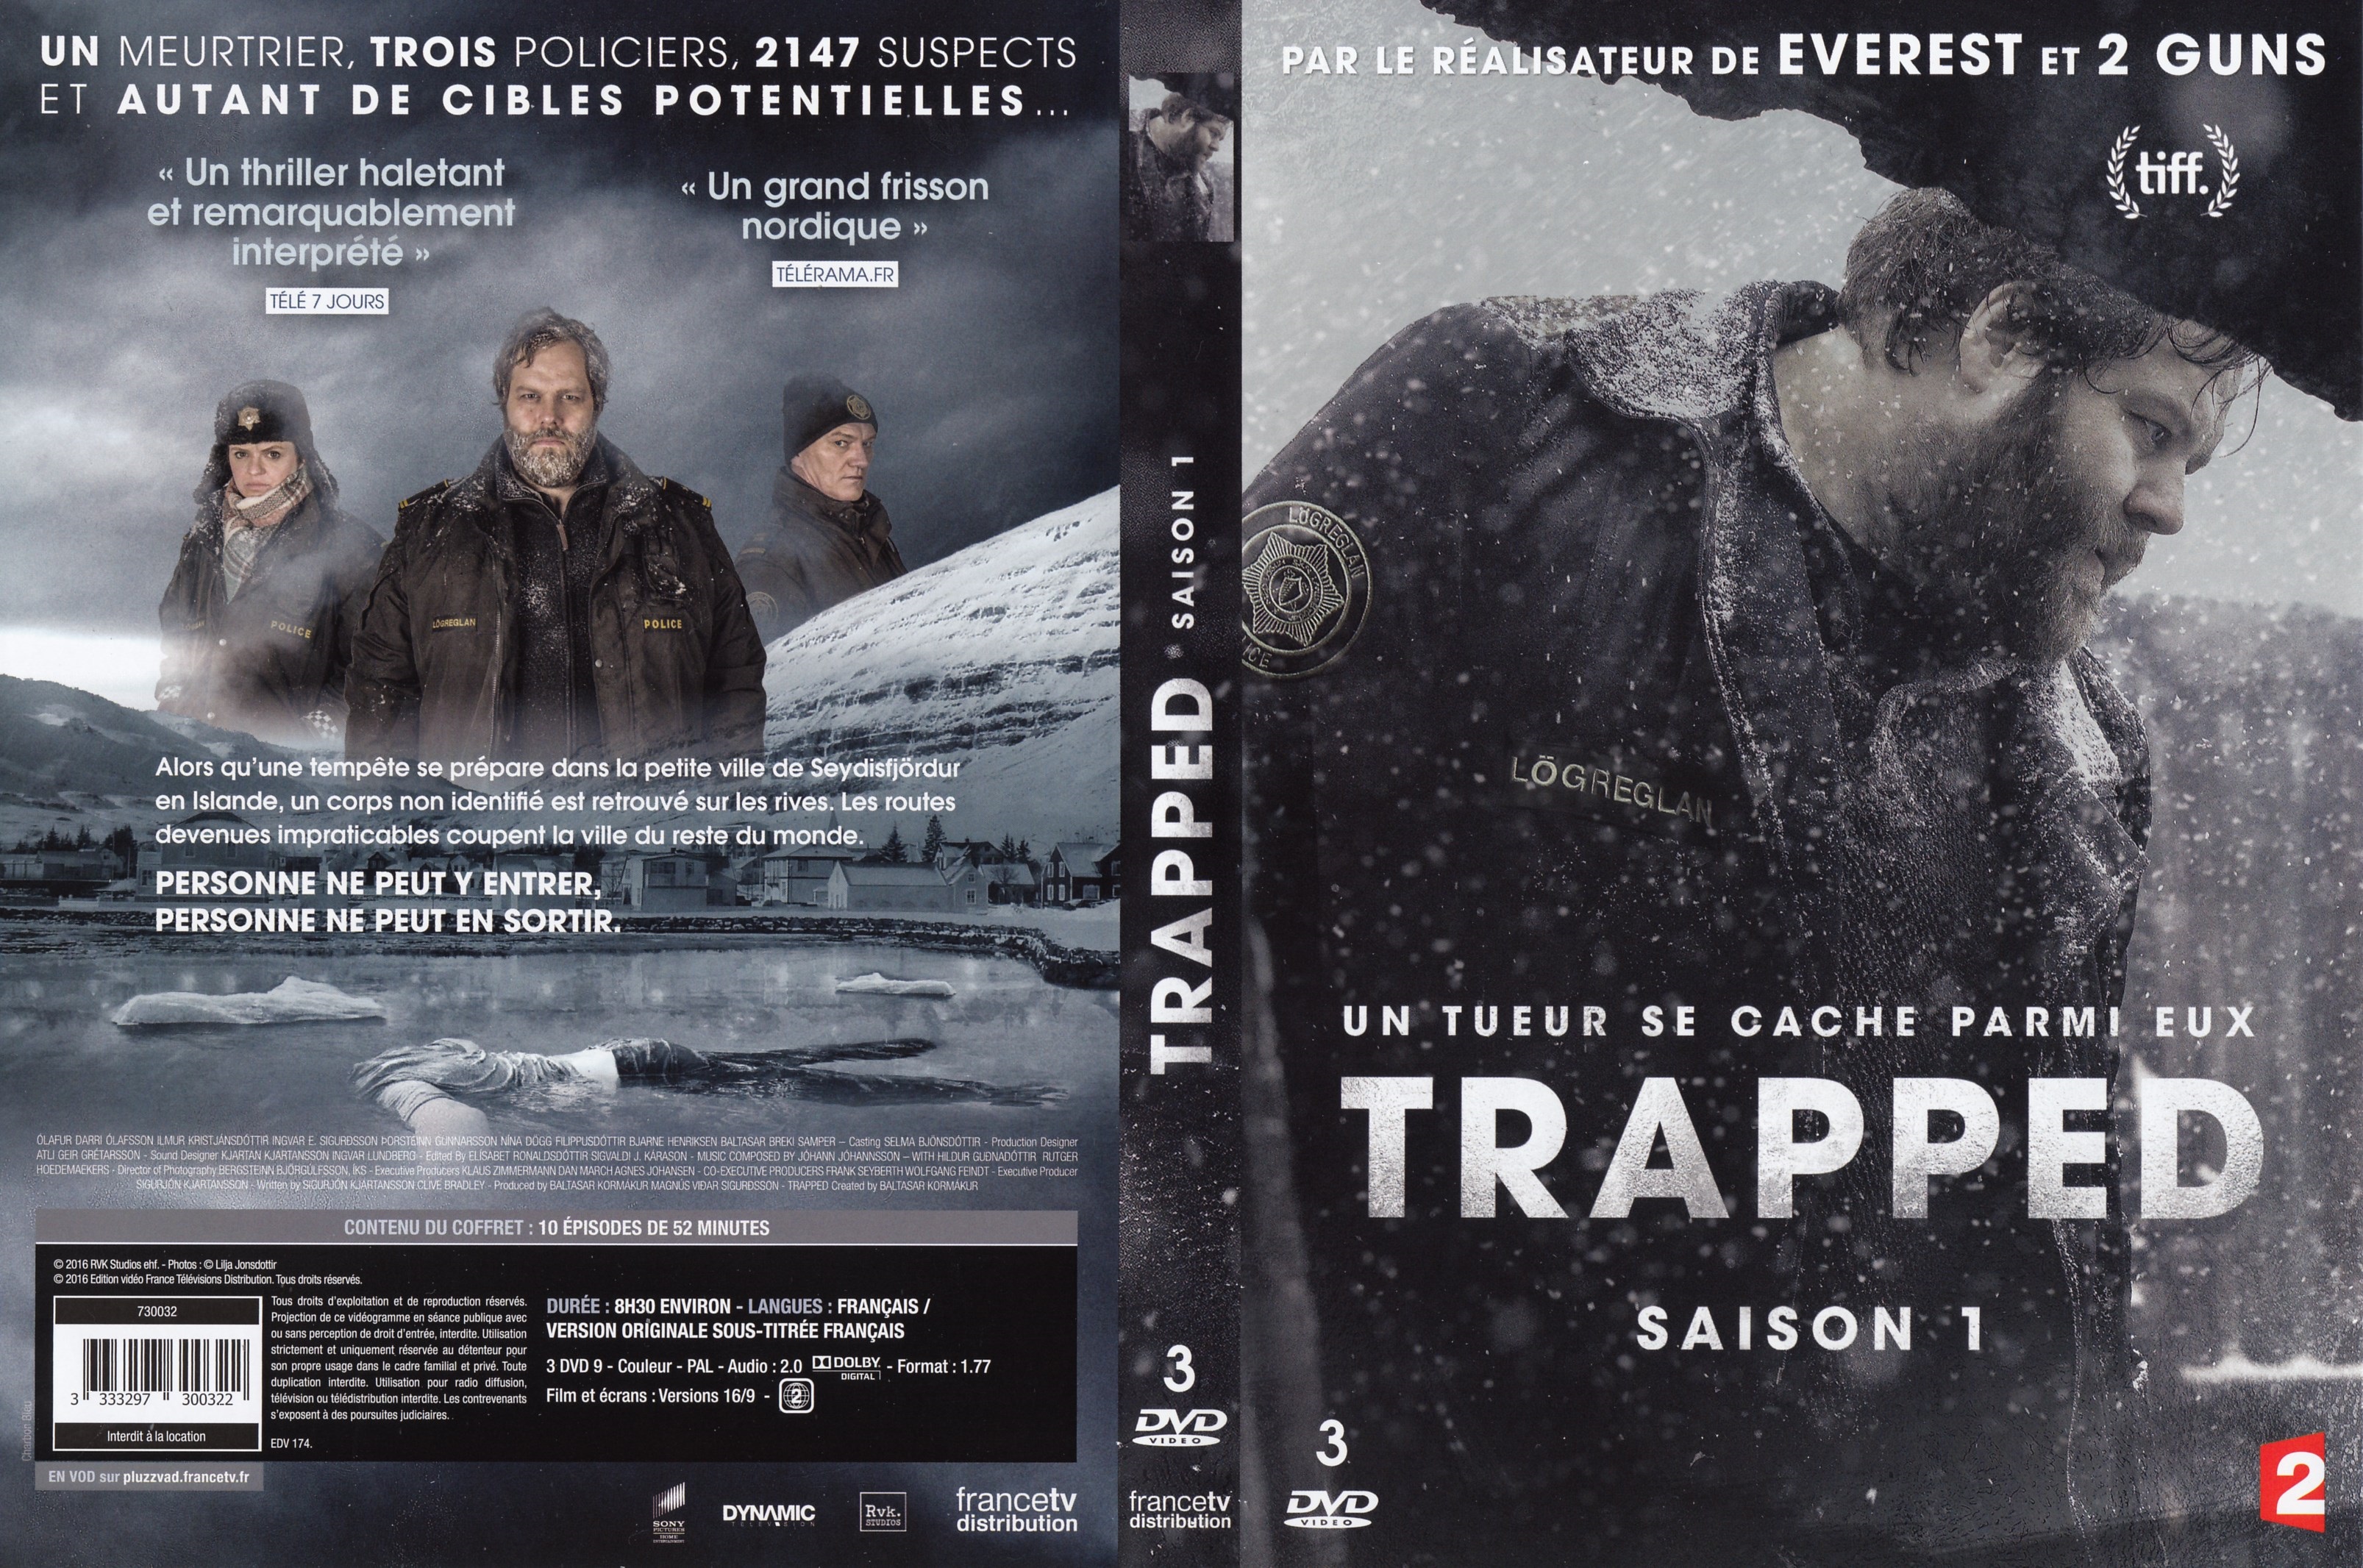 Jaquette DVD Trapped saison 1